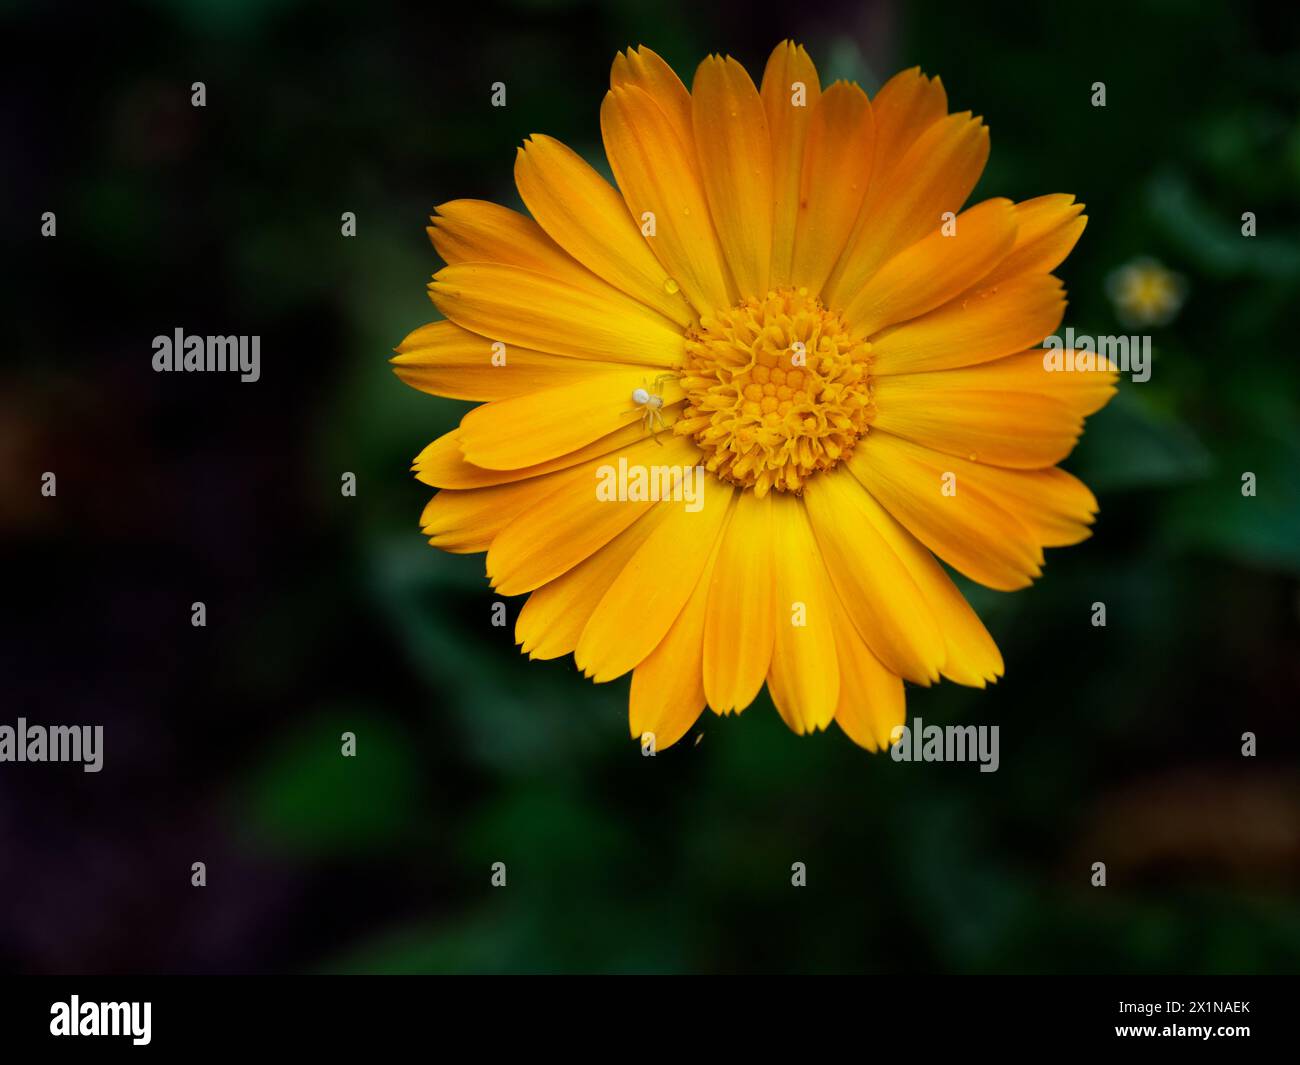 Die Nahaufnahme einer blühenden gelben Blume mit ihrer komplizierten Blütenstruktur und ihren zentralen Scheibenröschen unterstreicht die dunkle Kulisse ihre visuelle Attraktivität Stockfoto